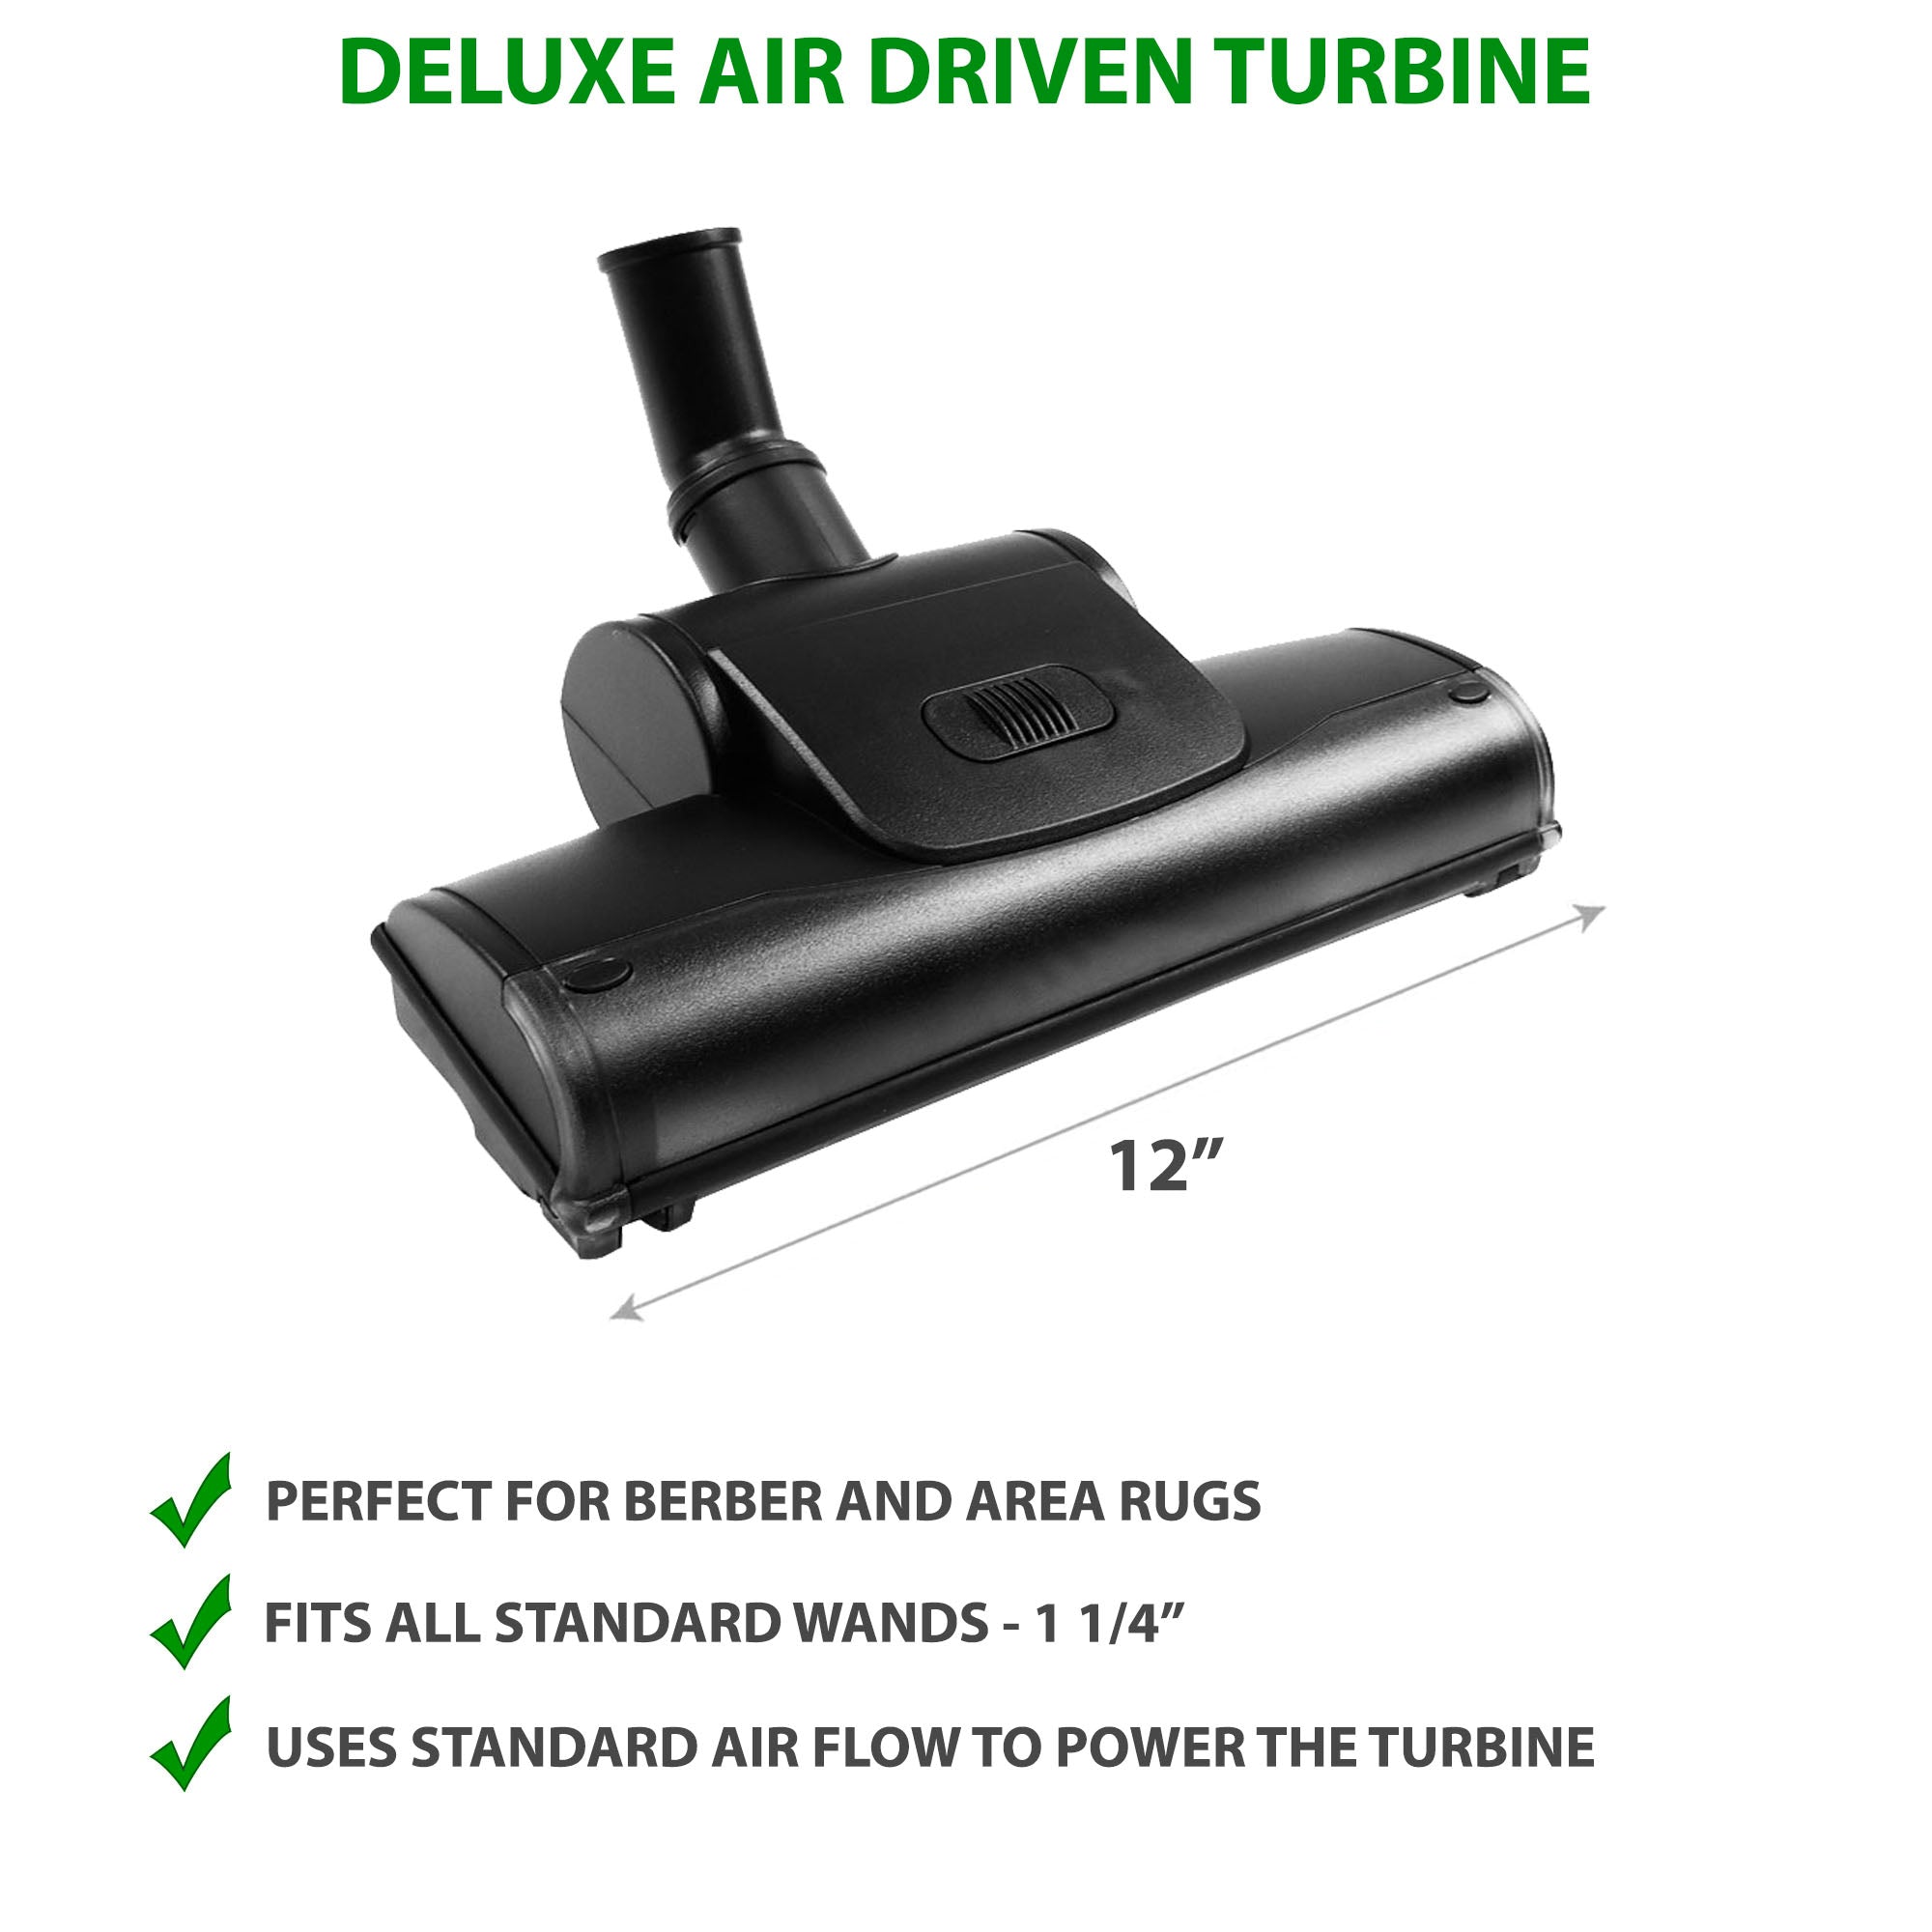 Deluxe Air Driven Turbine